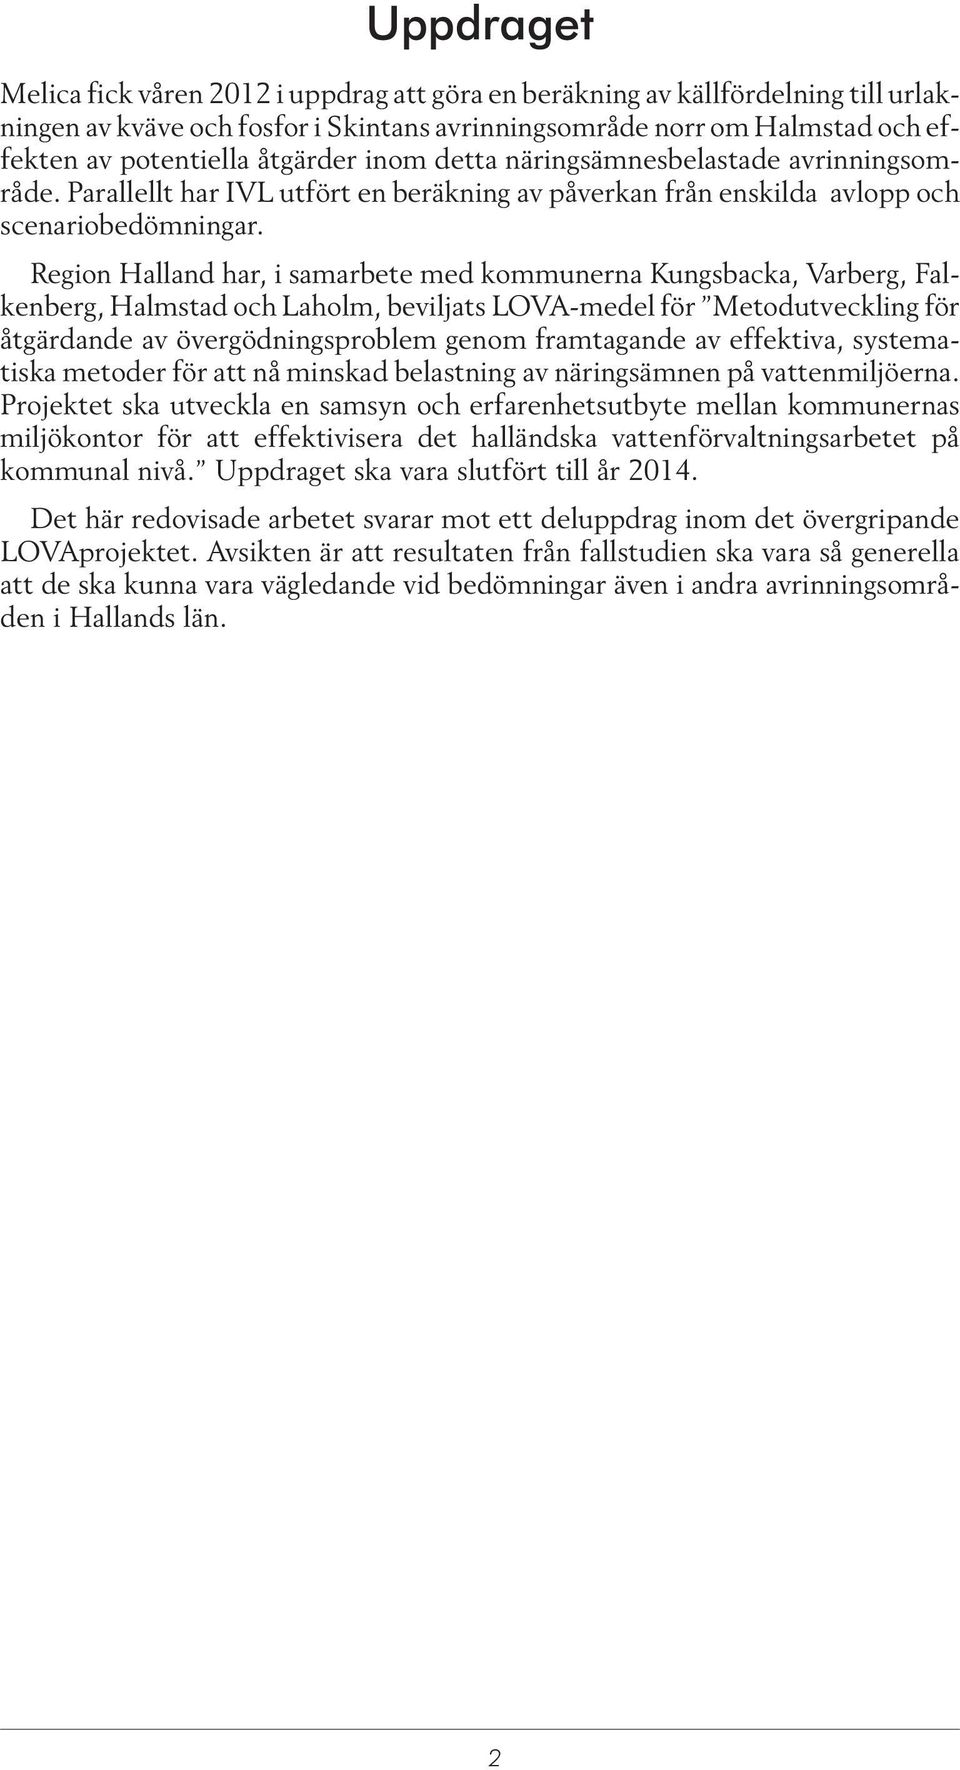 Region Halland har, i samarbete med kommunerna Kungsbacka, Varberg, Falkenberg, Halmstad och Laholm, beviljats LOVA-medel för Metodutveckling för åtgärdande av övergödningsproblem genom framtagande